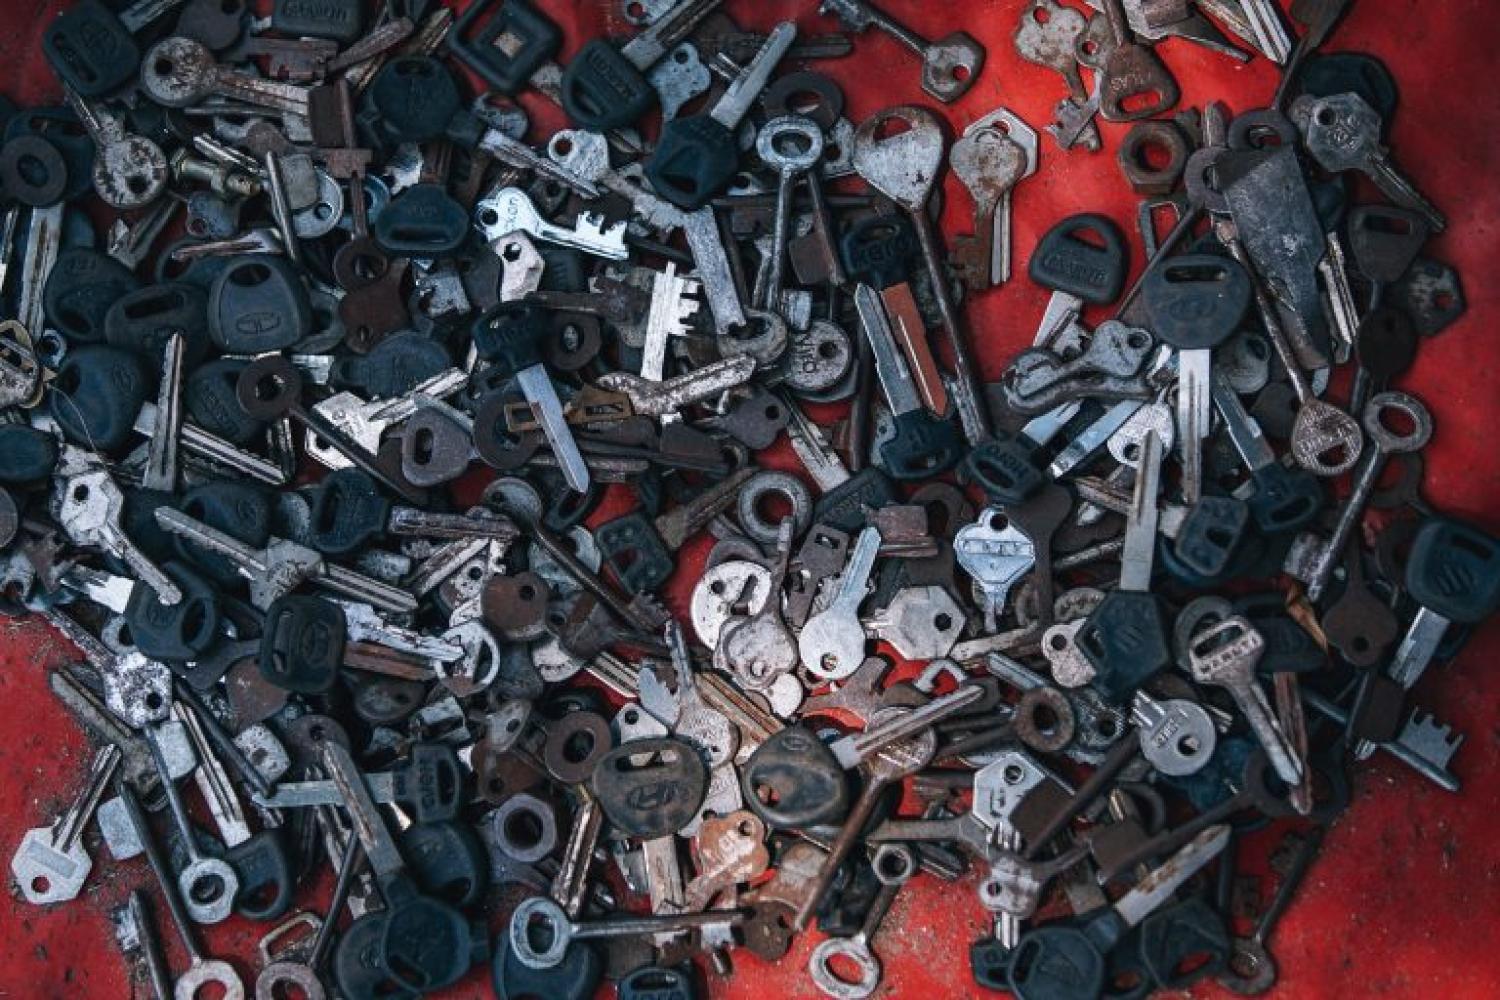 Keys are scrap metal